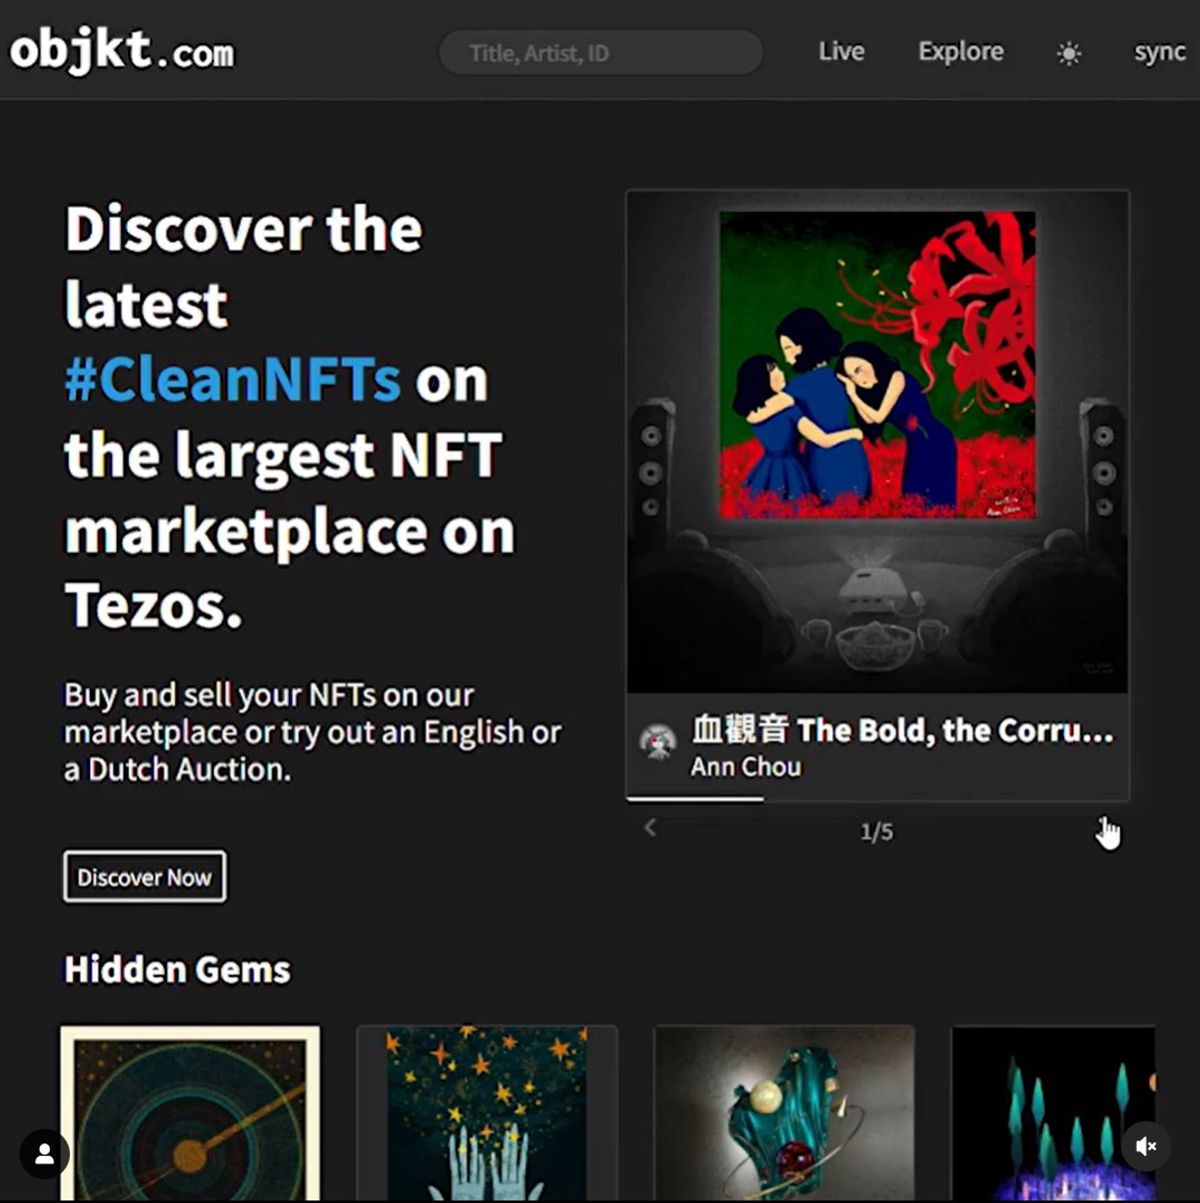 【獎項】繪影評系列登上 Tezos 鏈最大二級市場 Objkt.com 首頁